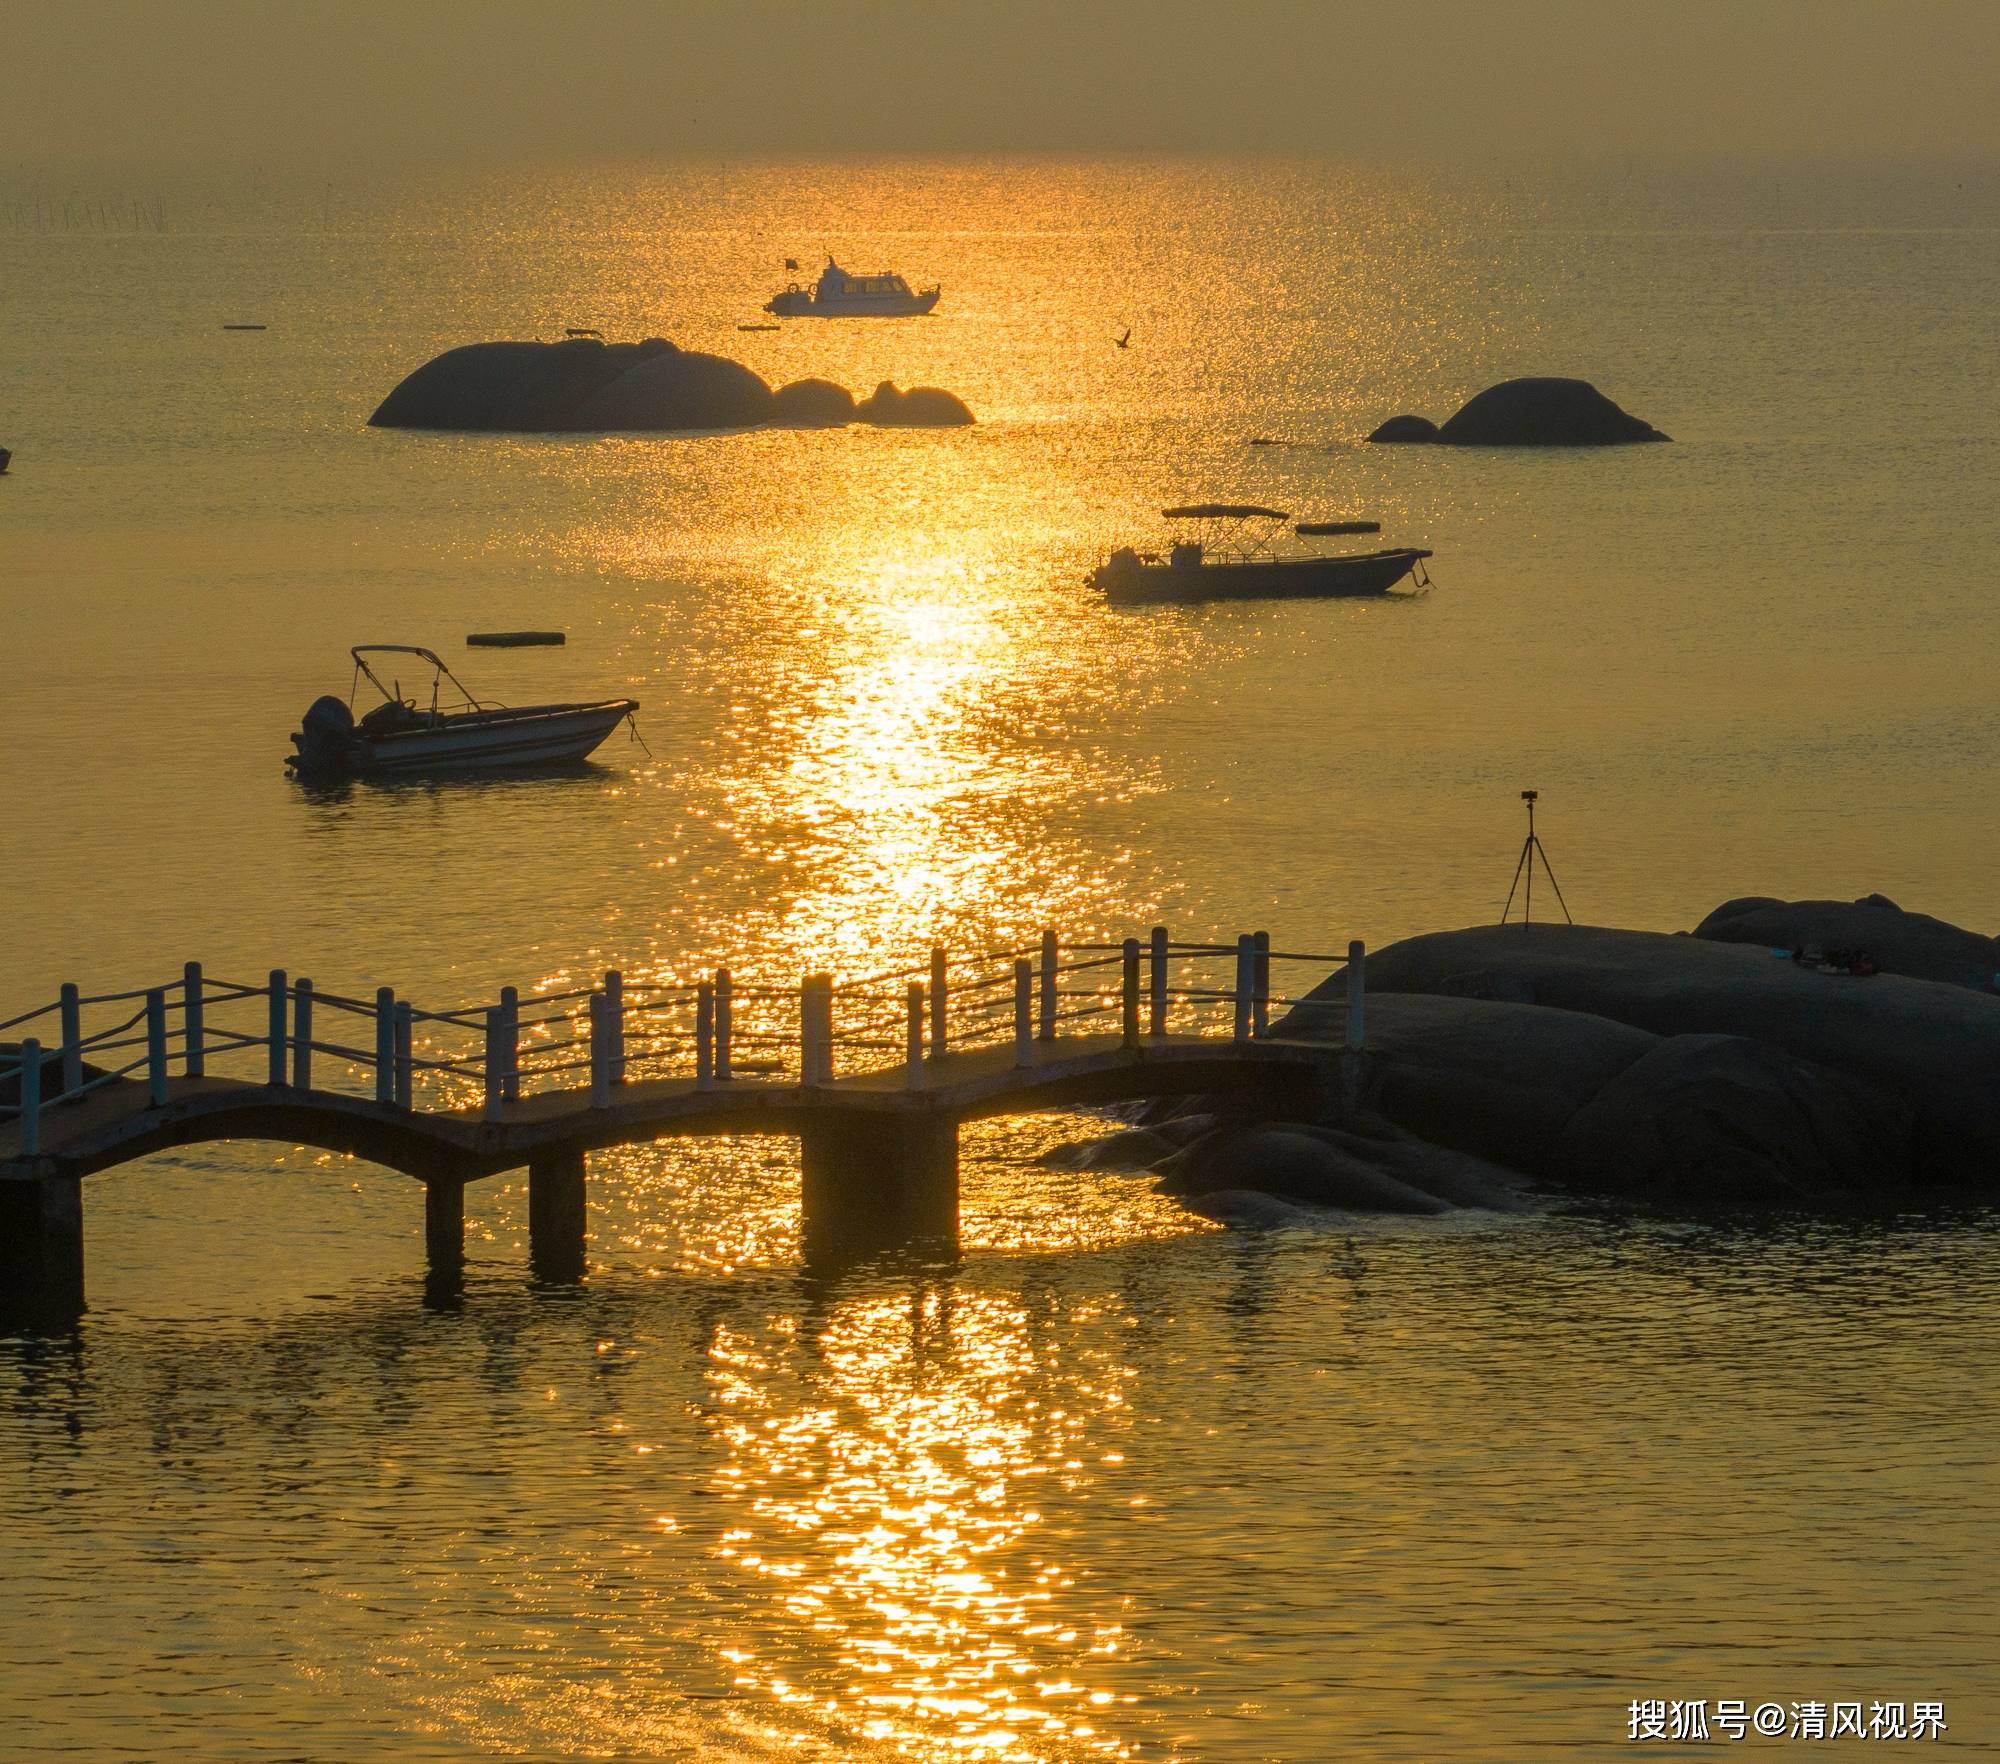 广西钦州三娘湾:清晨的日出,海豚的家园,渔村生活充满活力